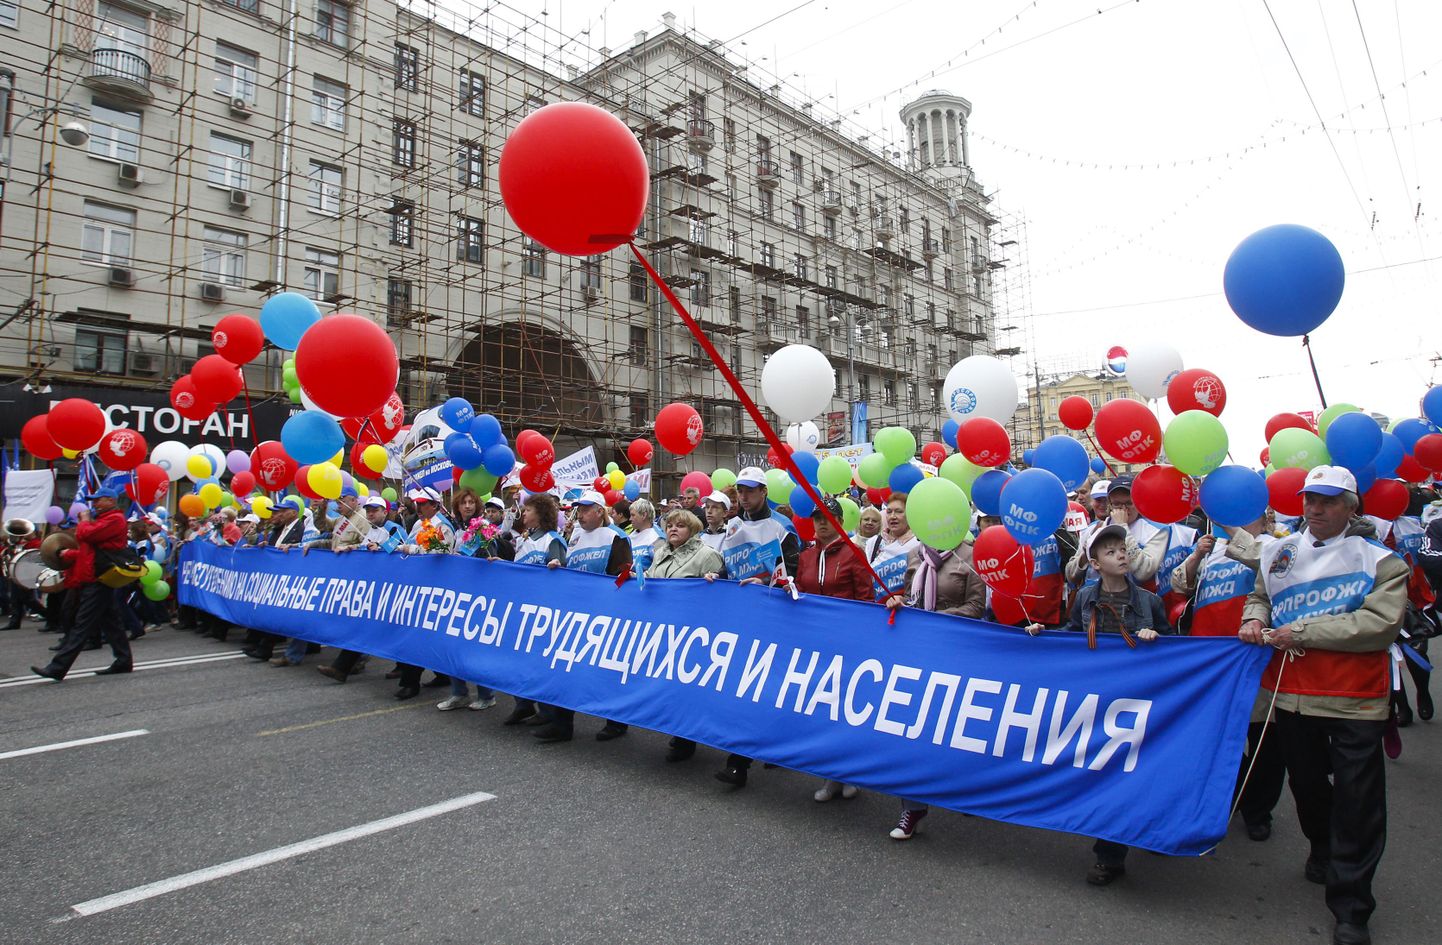 Kaubandustöötajate ametiühingu esindajad nõudsid Moskvas sotsiaalsete õiguste ja tööliste huvide kaitsmist.